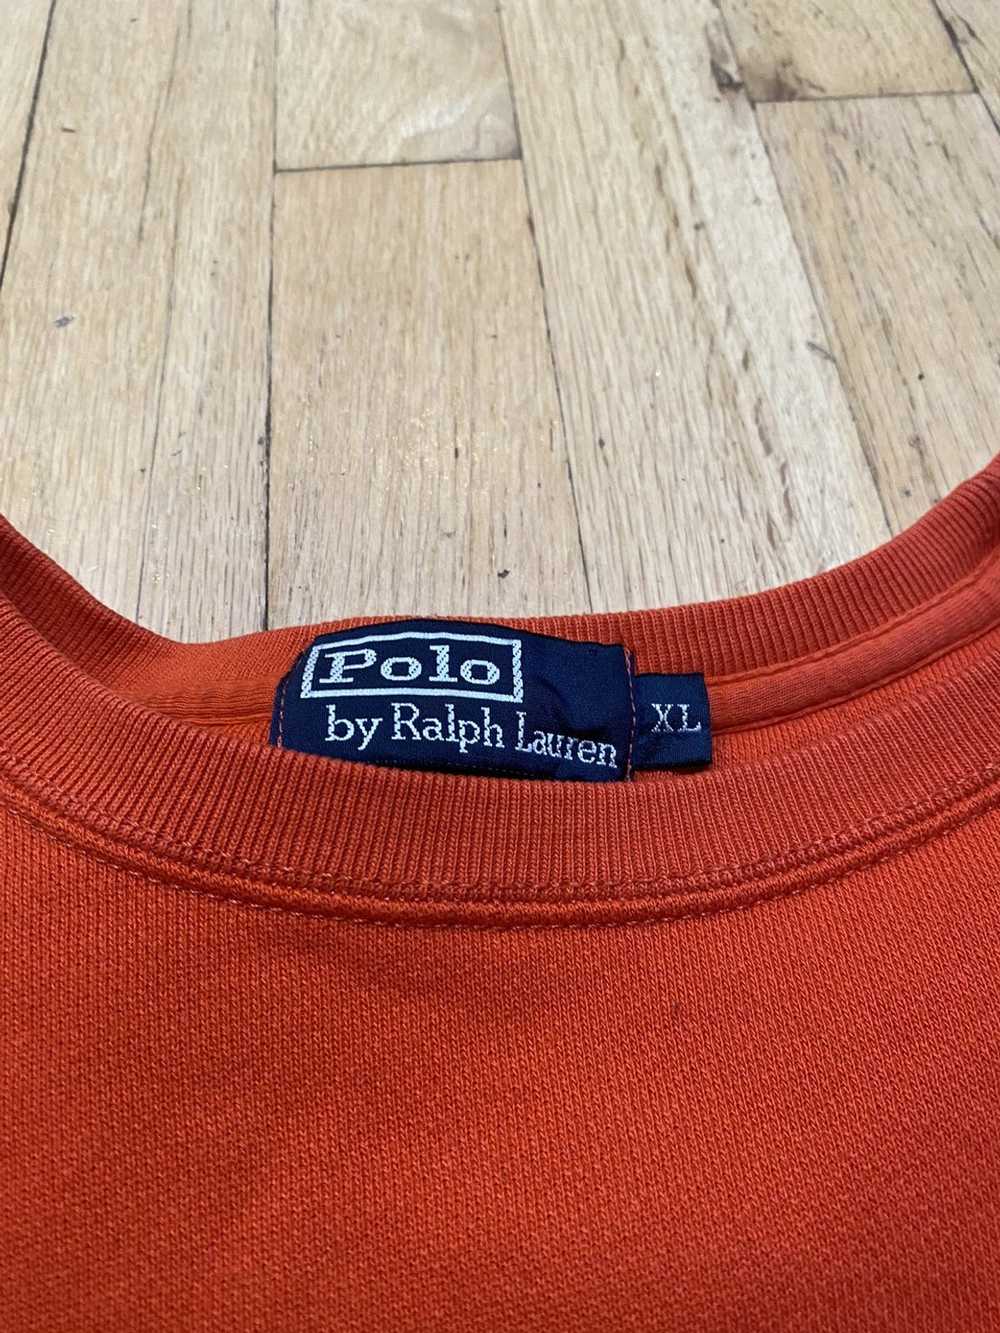 Polo Ralph Lauren Vintage Polo Ralph Lauren Mini … - image 3